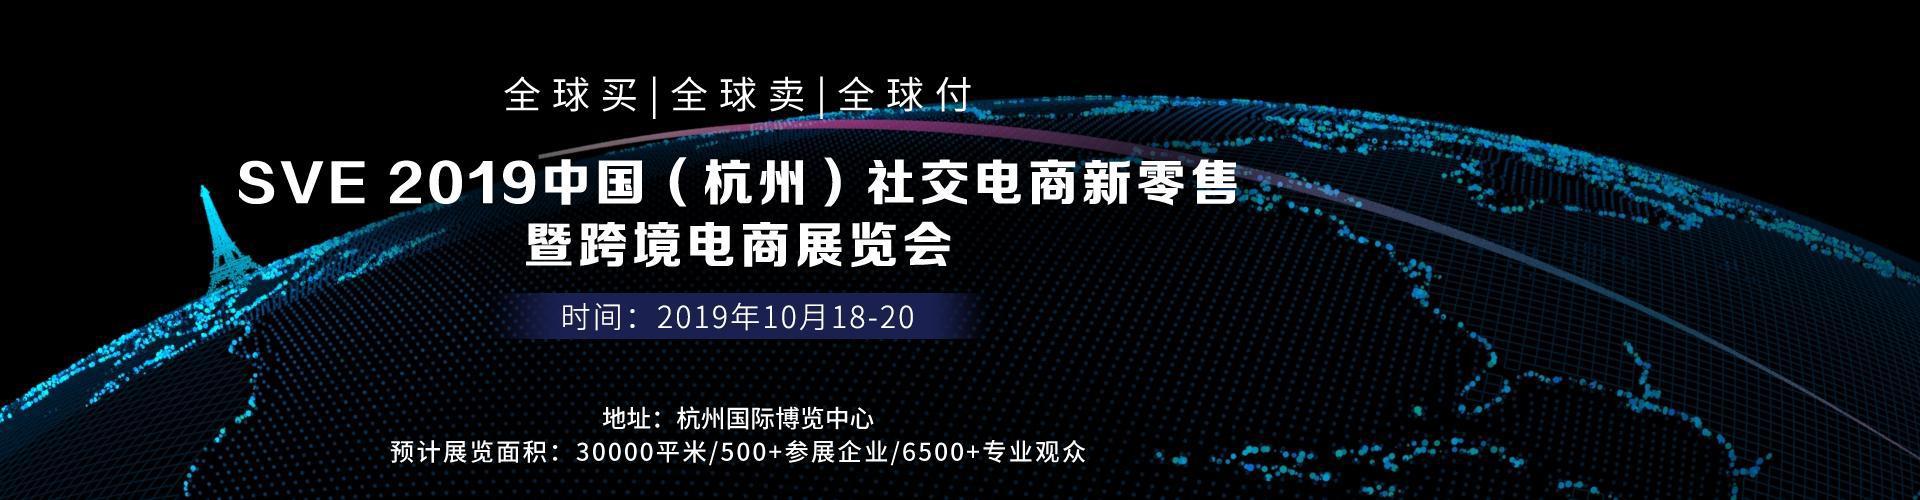 2019杭州社交电商新零售及跨境电商展览会